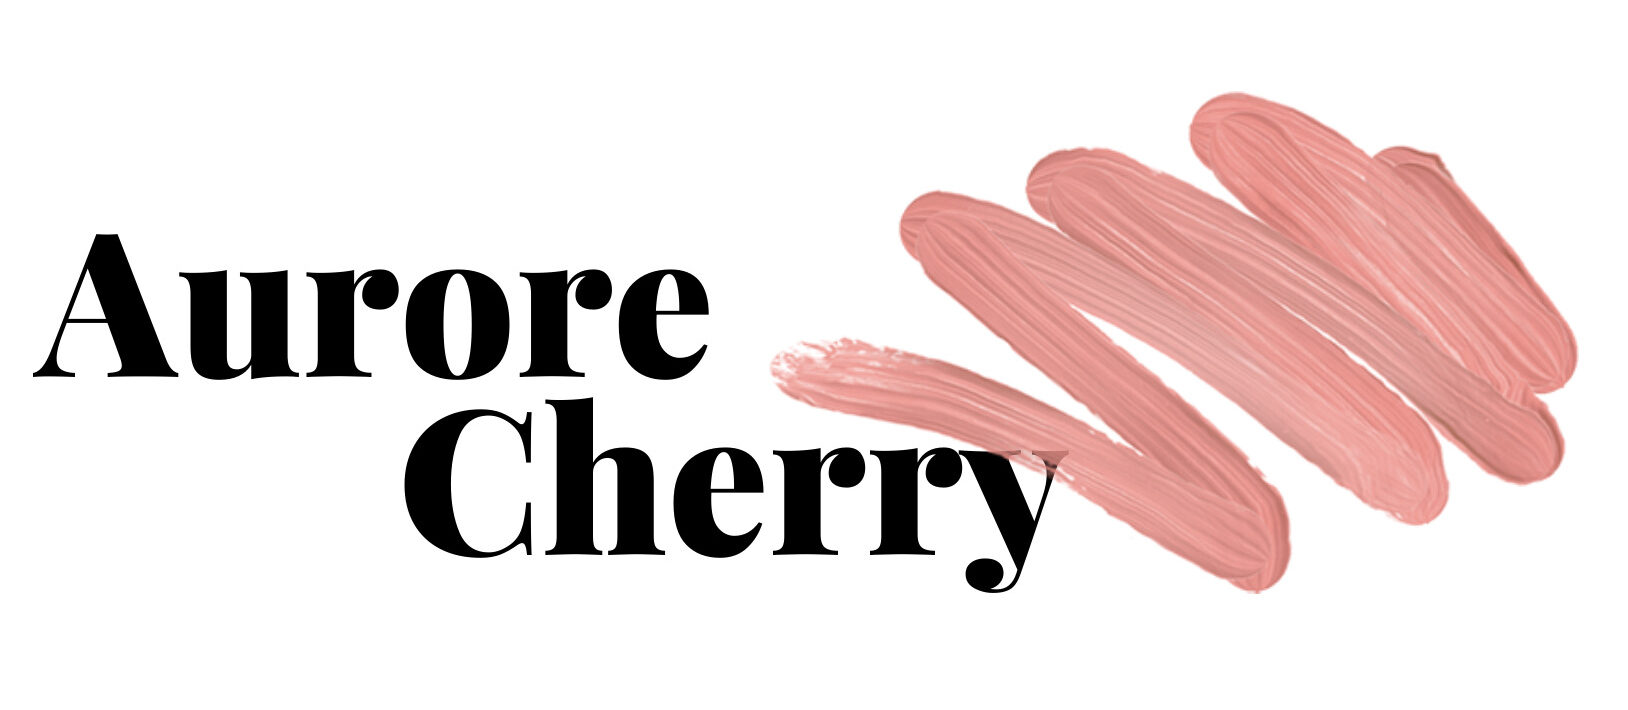 Aurore Cherry